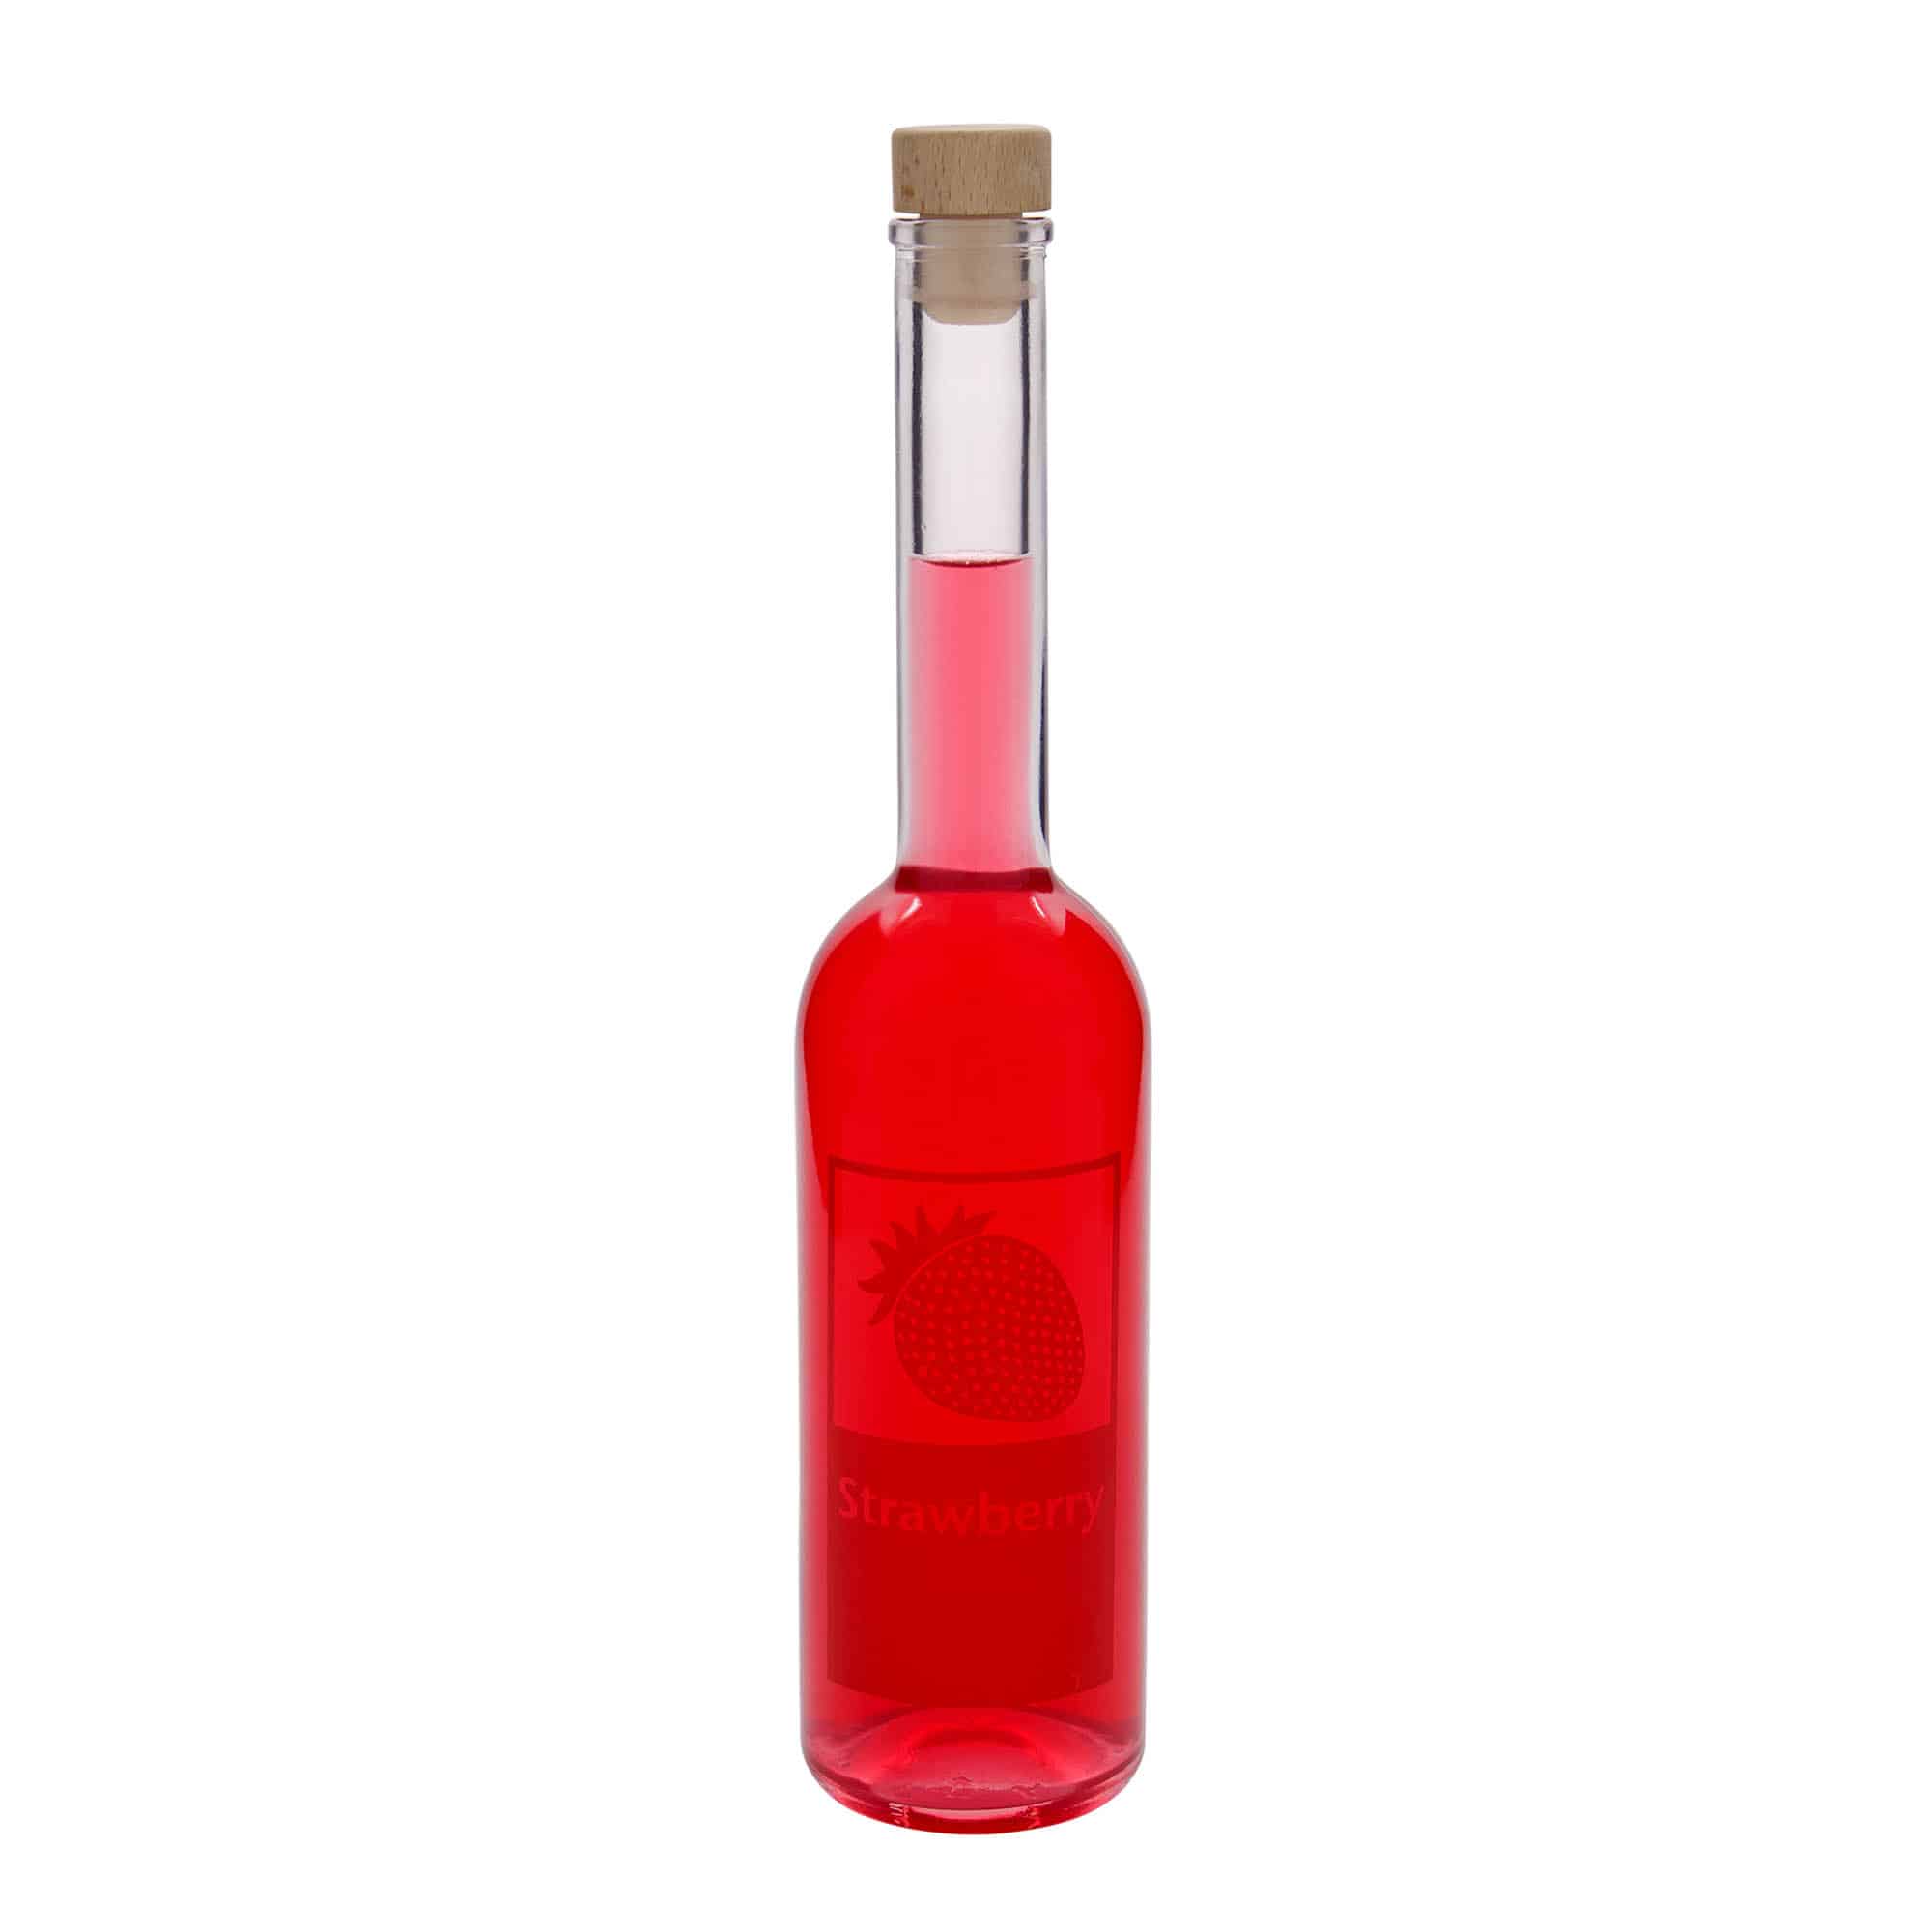 500 ml glasflaske 'Opera', motiv: Strawberry, åbning: Kork